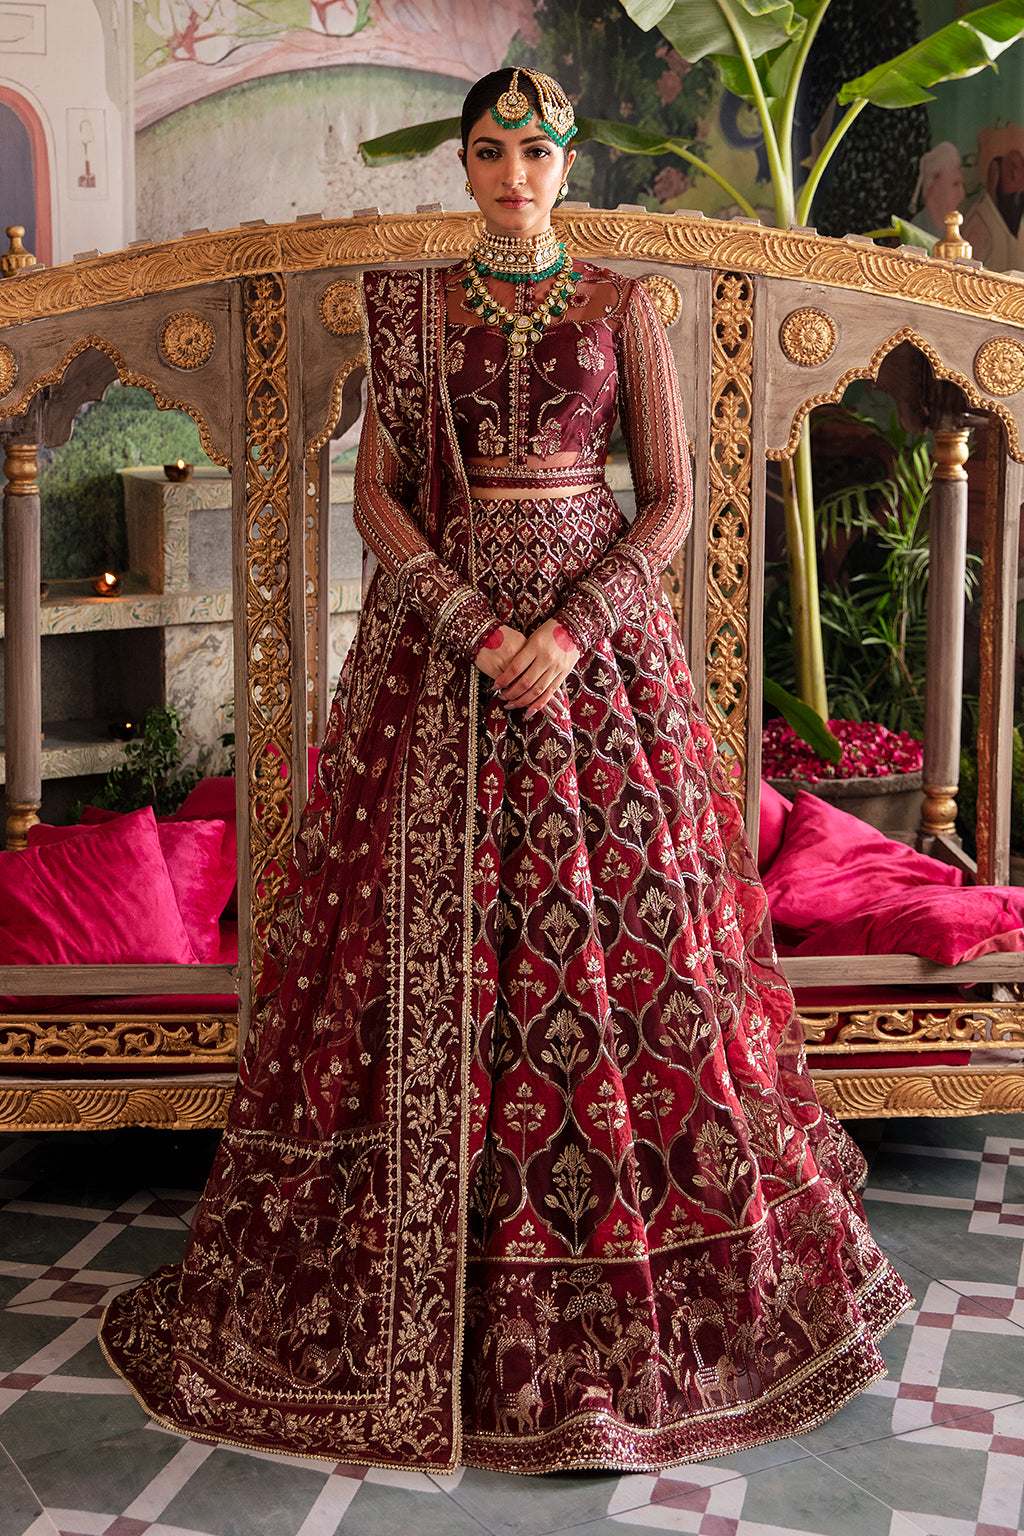 The story of Deepika Padukone's exquisite Deewani Mastani lehenga. On  Fashion Friday - India Today